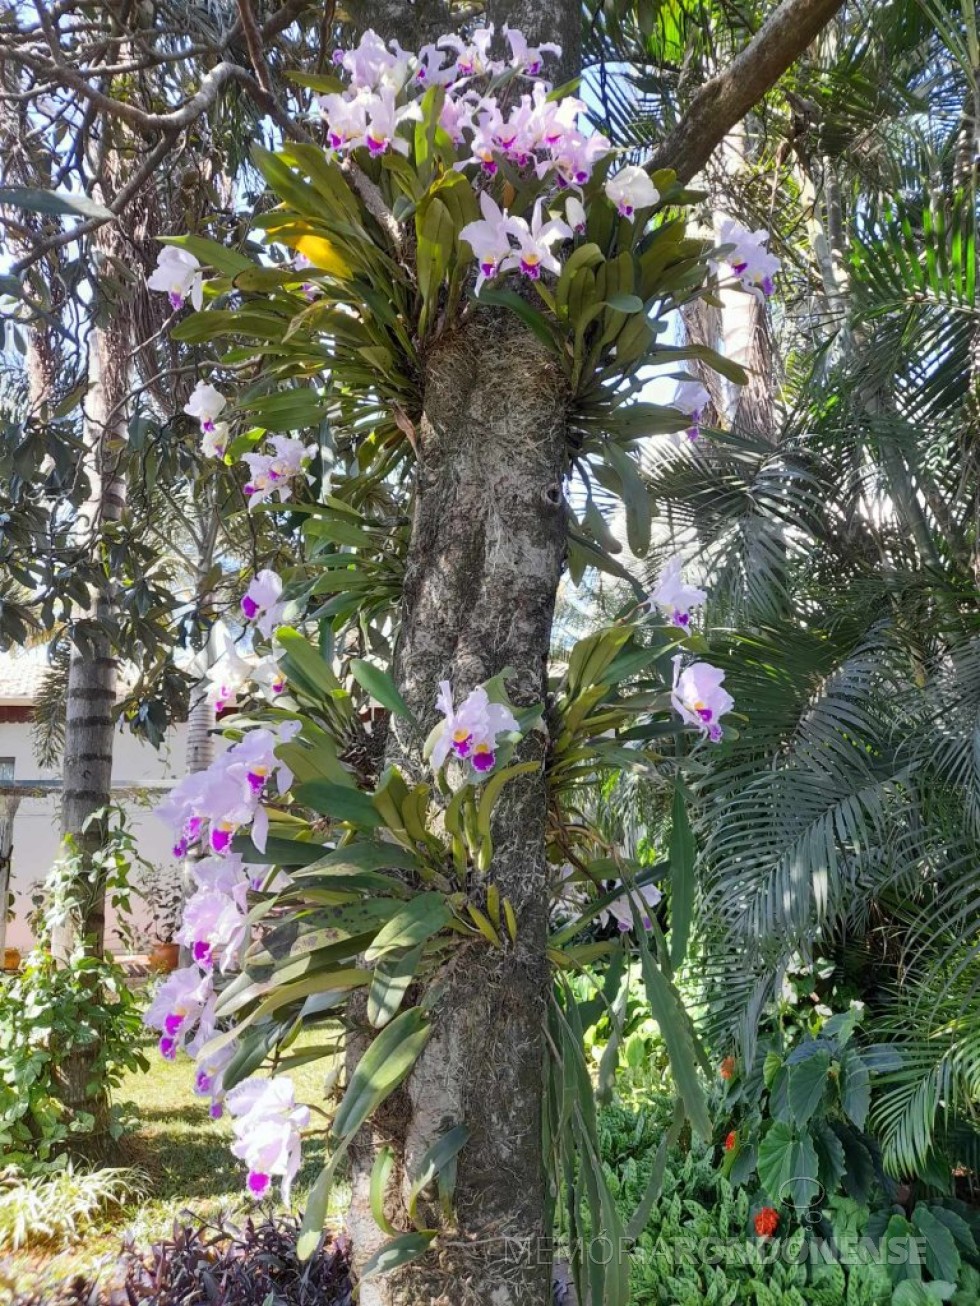 || Cattleya gaskeliana, nativa da Venezuela, em florada no jardim do casal Elenita e Harto Viteck, na cidade de Marechal Cândido Rondon (PR), na segunda metade do mês de julho de 2023.
Imagem: Acervo do Casal - FOTO 50 - 